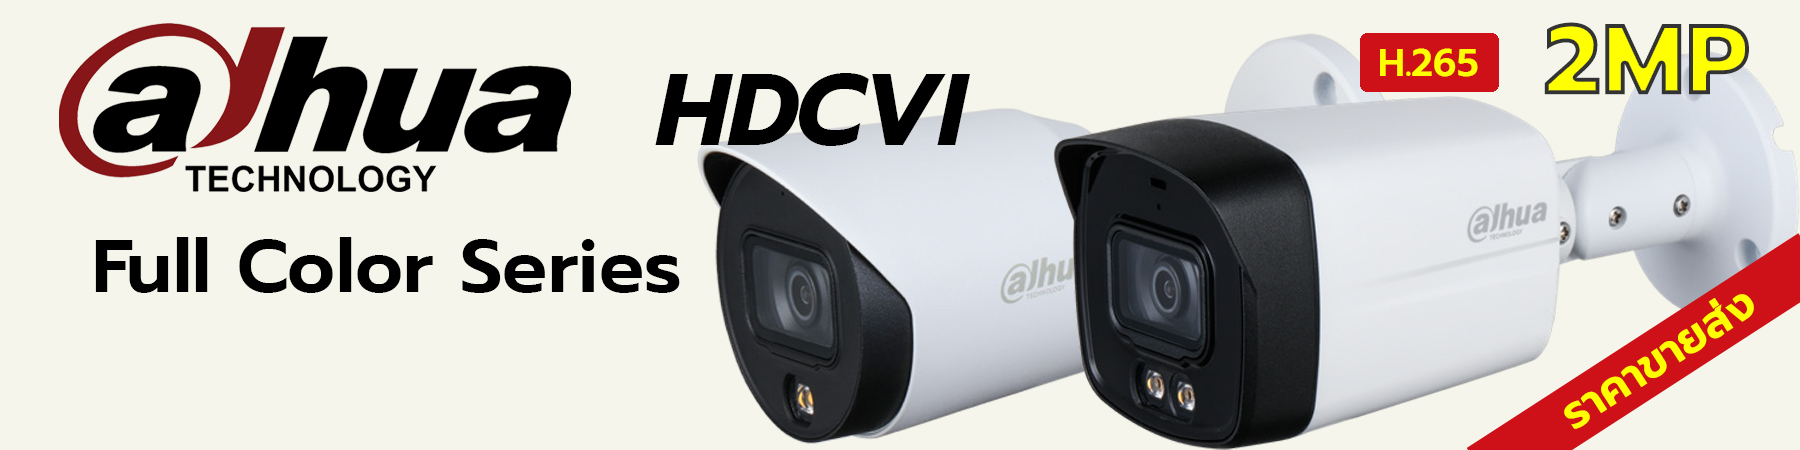 กล้องวงจรปิด Dahua, กล้องวงจรปิด Dahua Full Color, Dahua Full Color, Dahua Built-in Mic, Dahua Full Color Built-in Mic, HAC-HFW1239T-A-LED, HAC-HDW1239Tl-A-LED, HAC-HFW1239TLM-A-LED, HAC-HFW1239TLM-LED